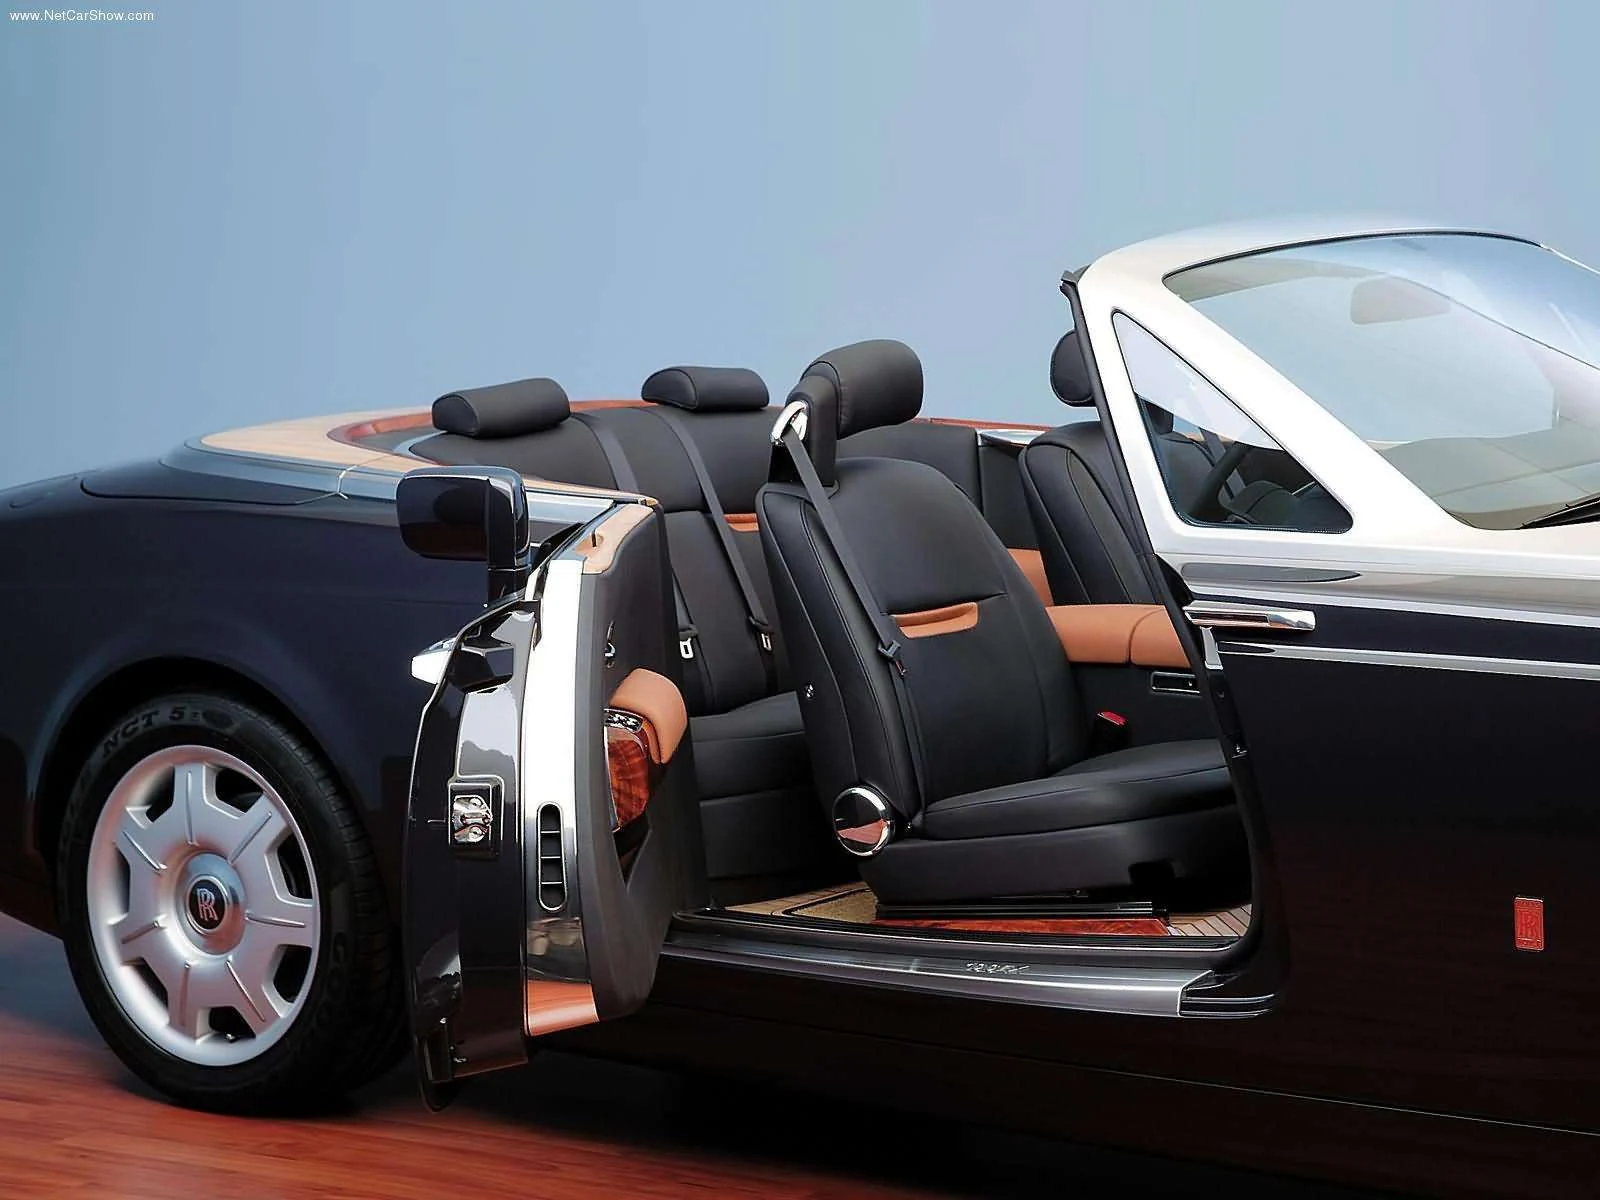 Hình ảnh xe siêu sang Rolls-Royce 100EX Centenary Concept 2004 & nội ngoại thất